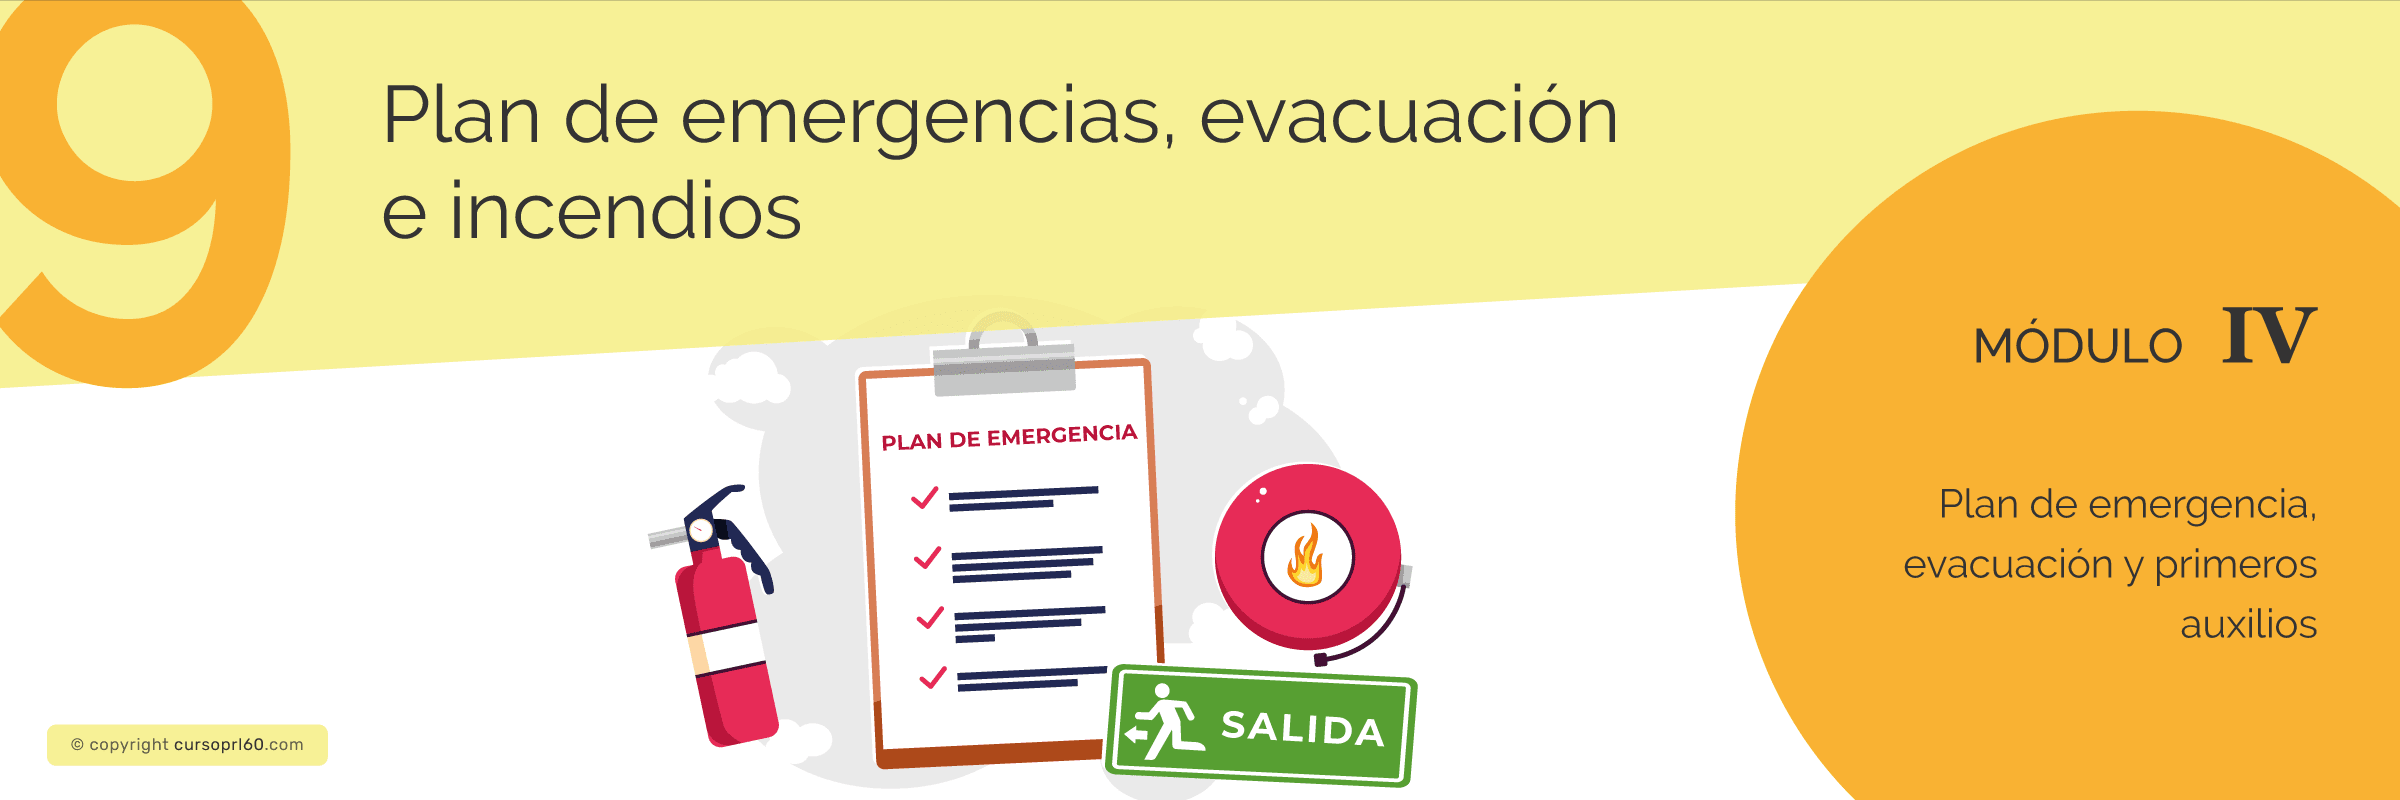 Plan de emergencias, evacuación e incendios